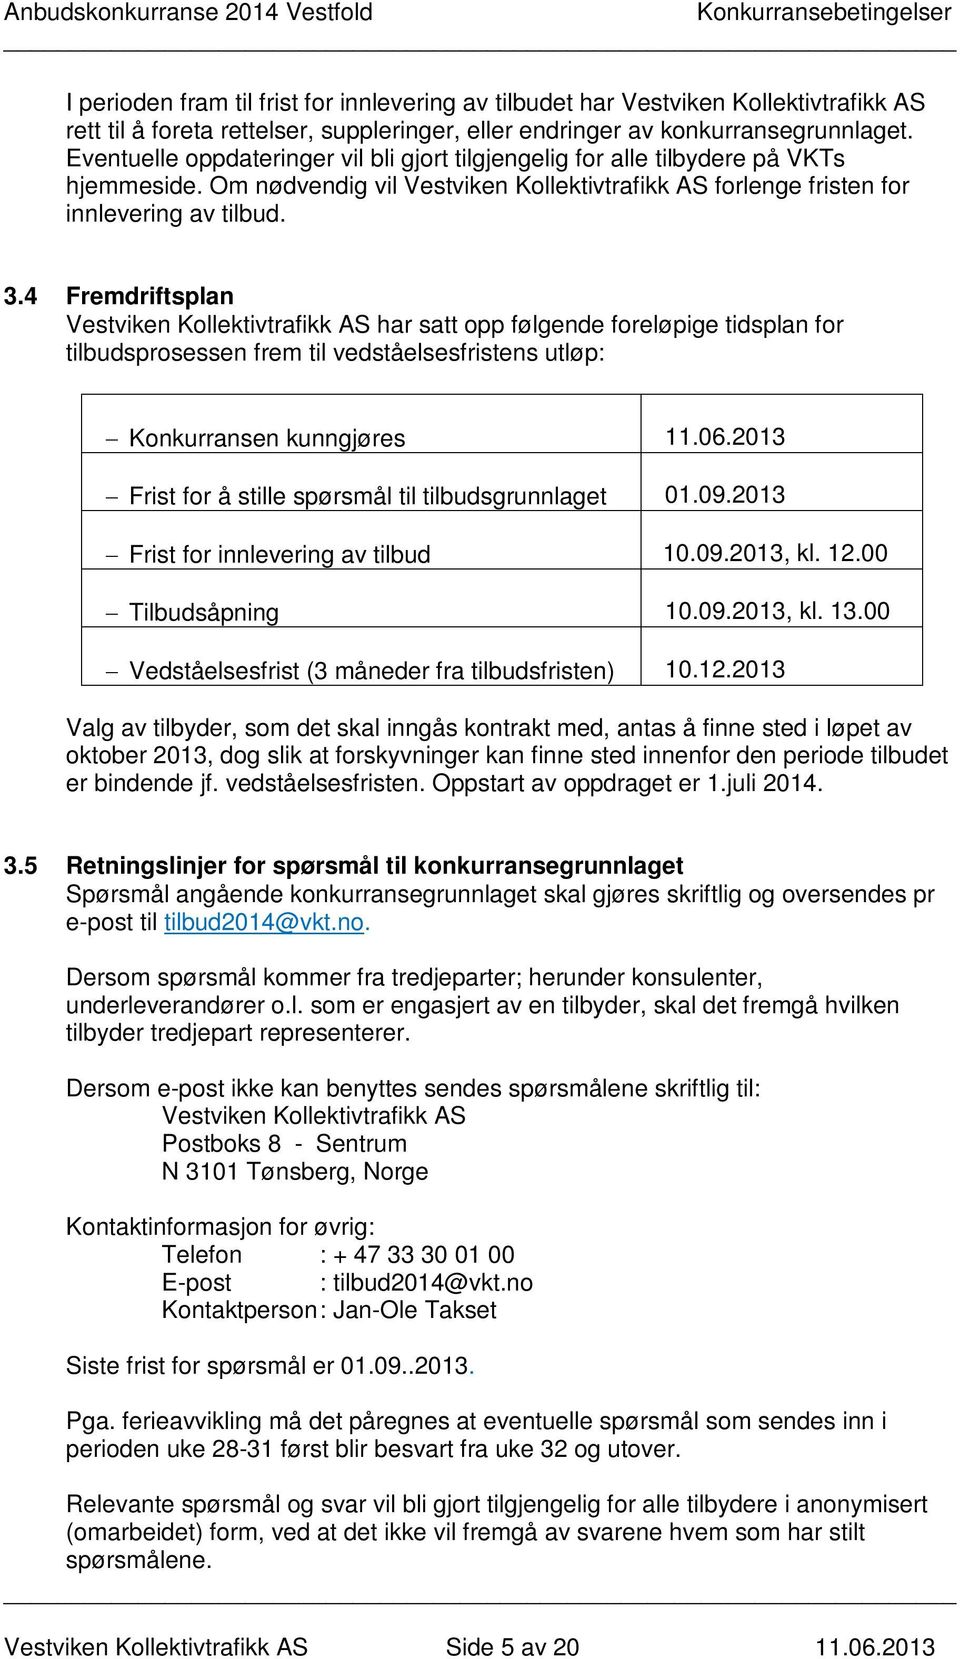 4 Fremdriftsplan Vestviken Kollektivtrafikk AS har satt opp følgende foreløpige tidsplan for tilbudsprosessen frem til vedståelsesfristens utløp: Konkurransen kunngjøres 11.06.